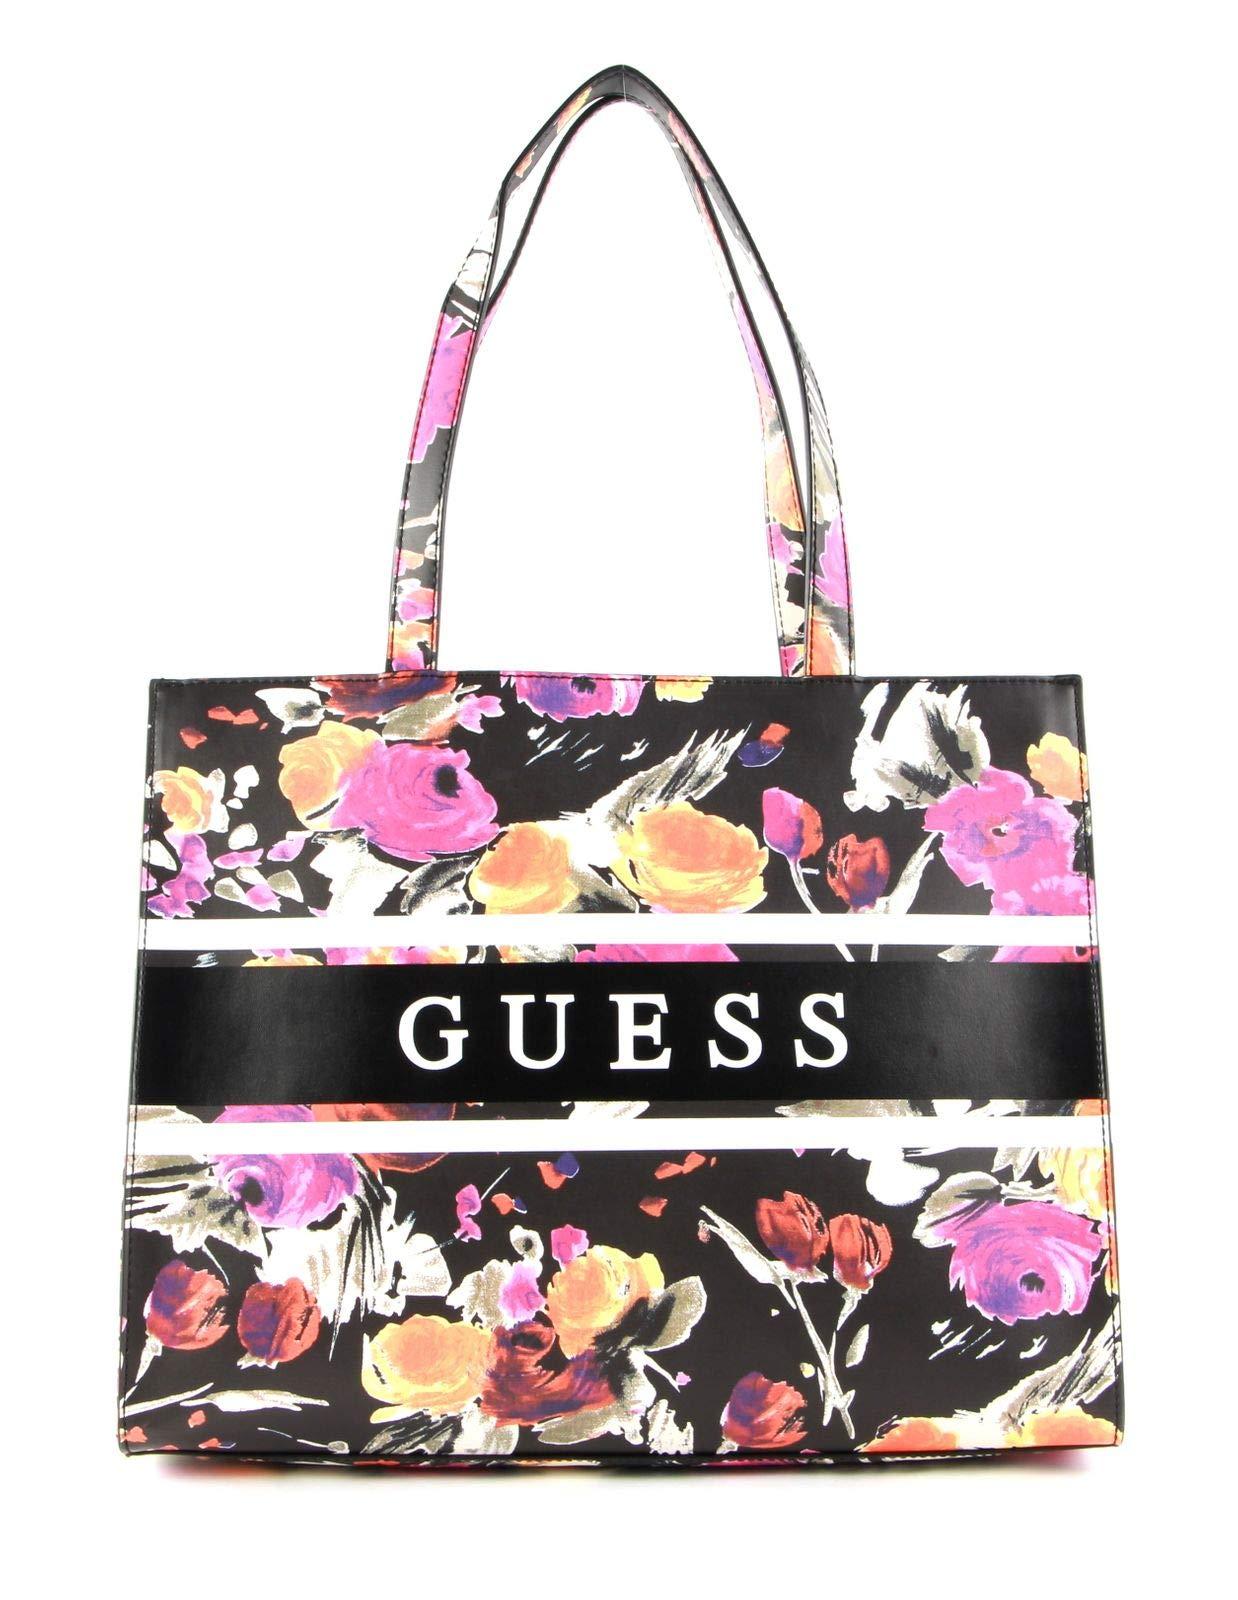 Guess Monique Tote Bag Floral Multi | Lyst DE